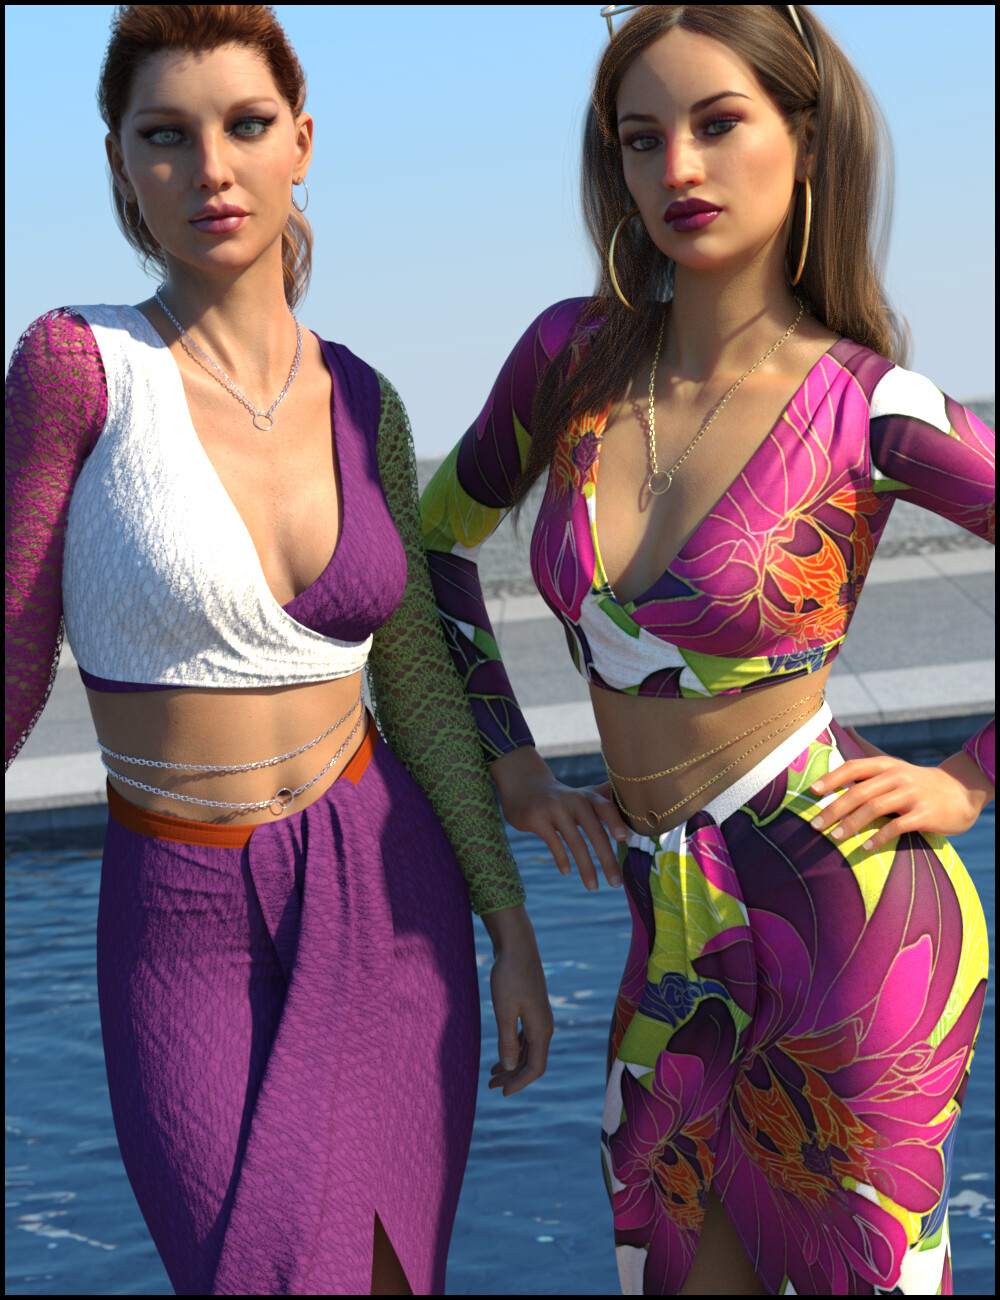 ArtStation - On Fleek Outfit with dForce for Genesis 8 Females